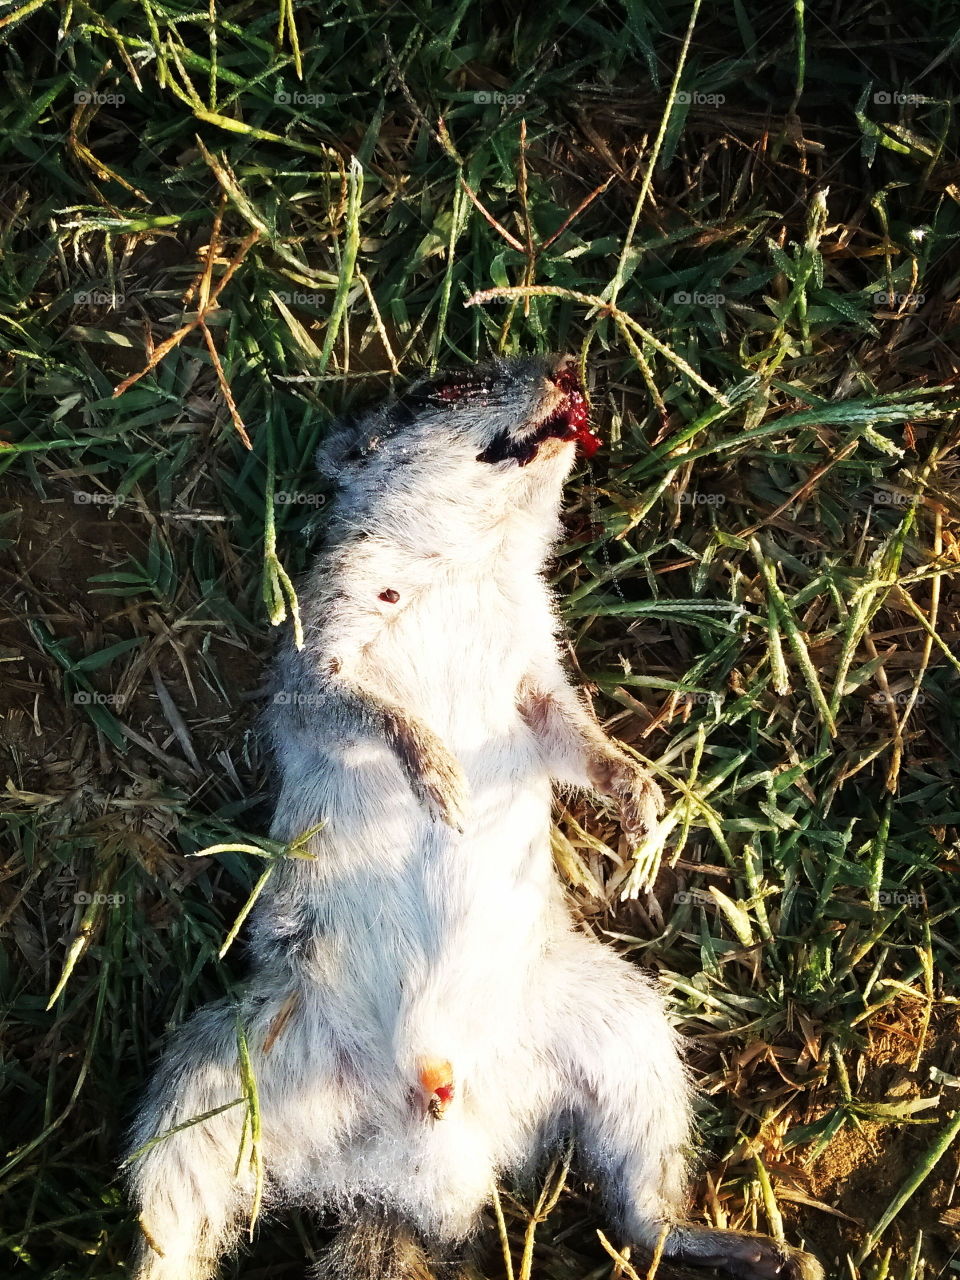 dead squirrel